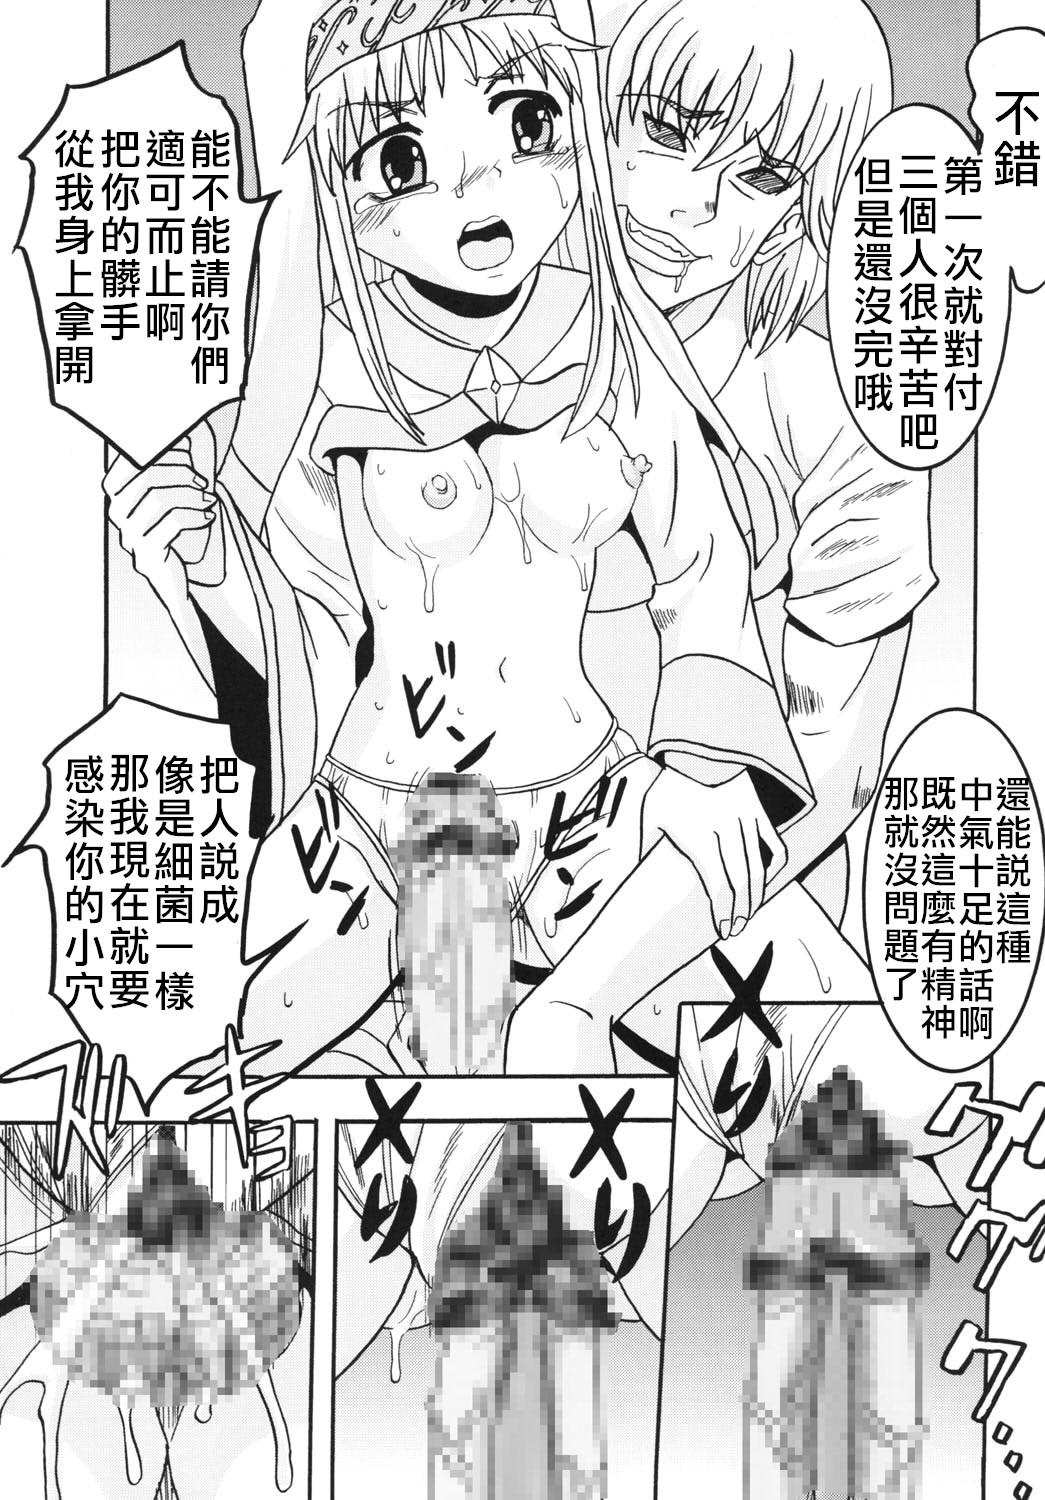 Toaru Otaku no Index #1 | 某魔术的淫书目录 #01 16